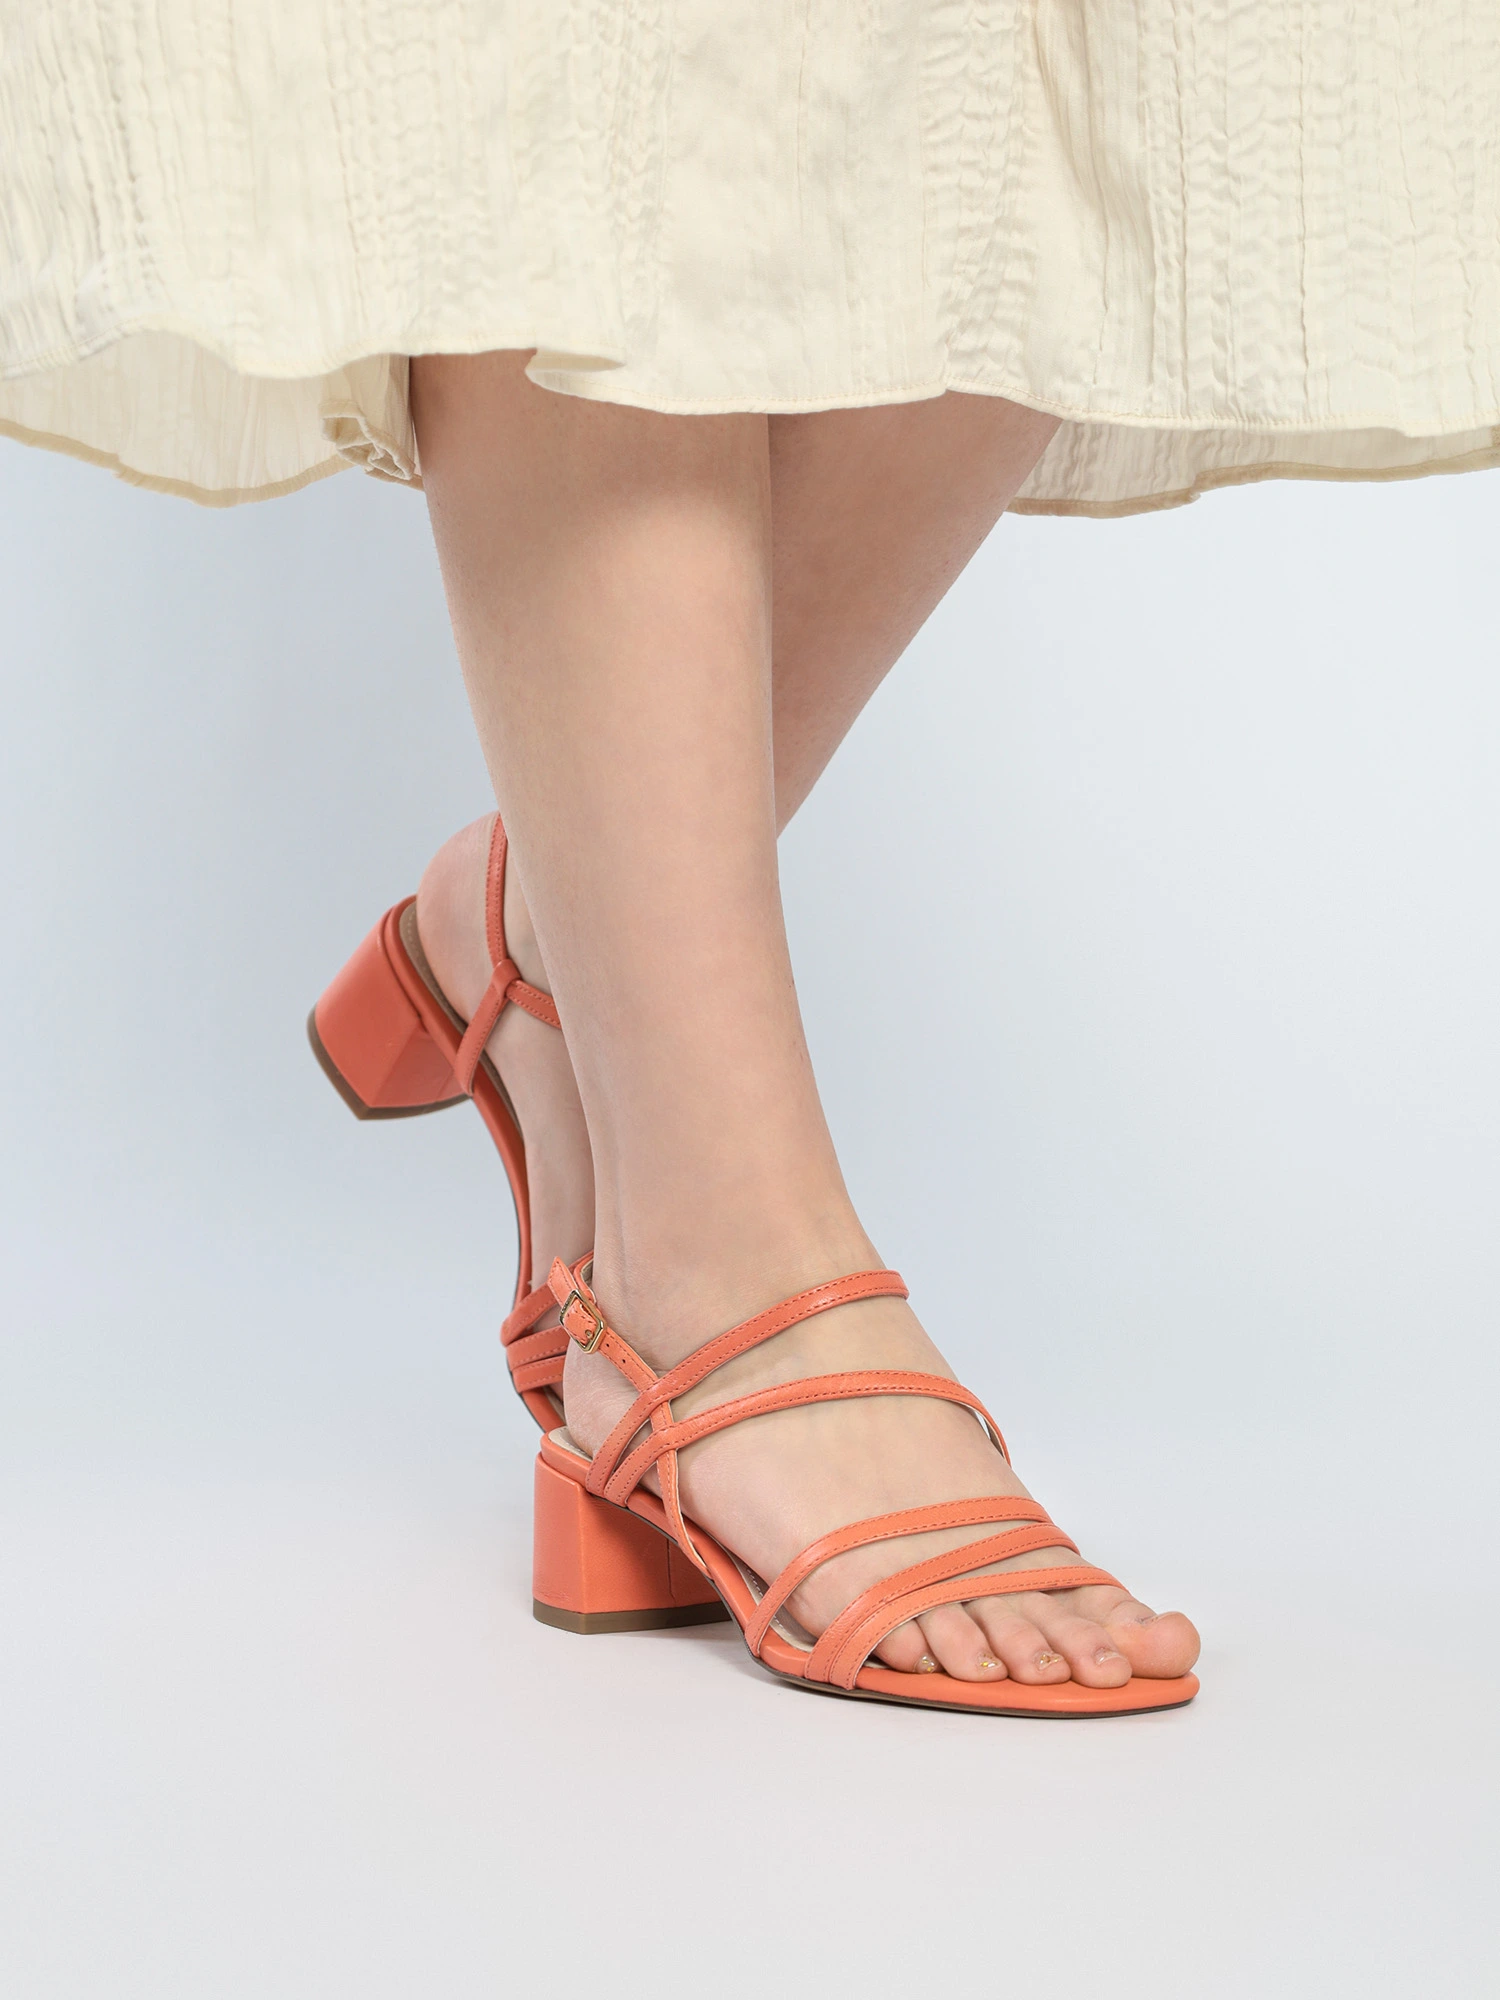 Босоножки оранжевого цвета на широком низком каблуке